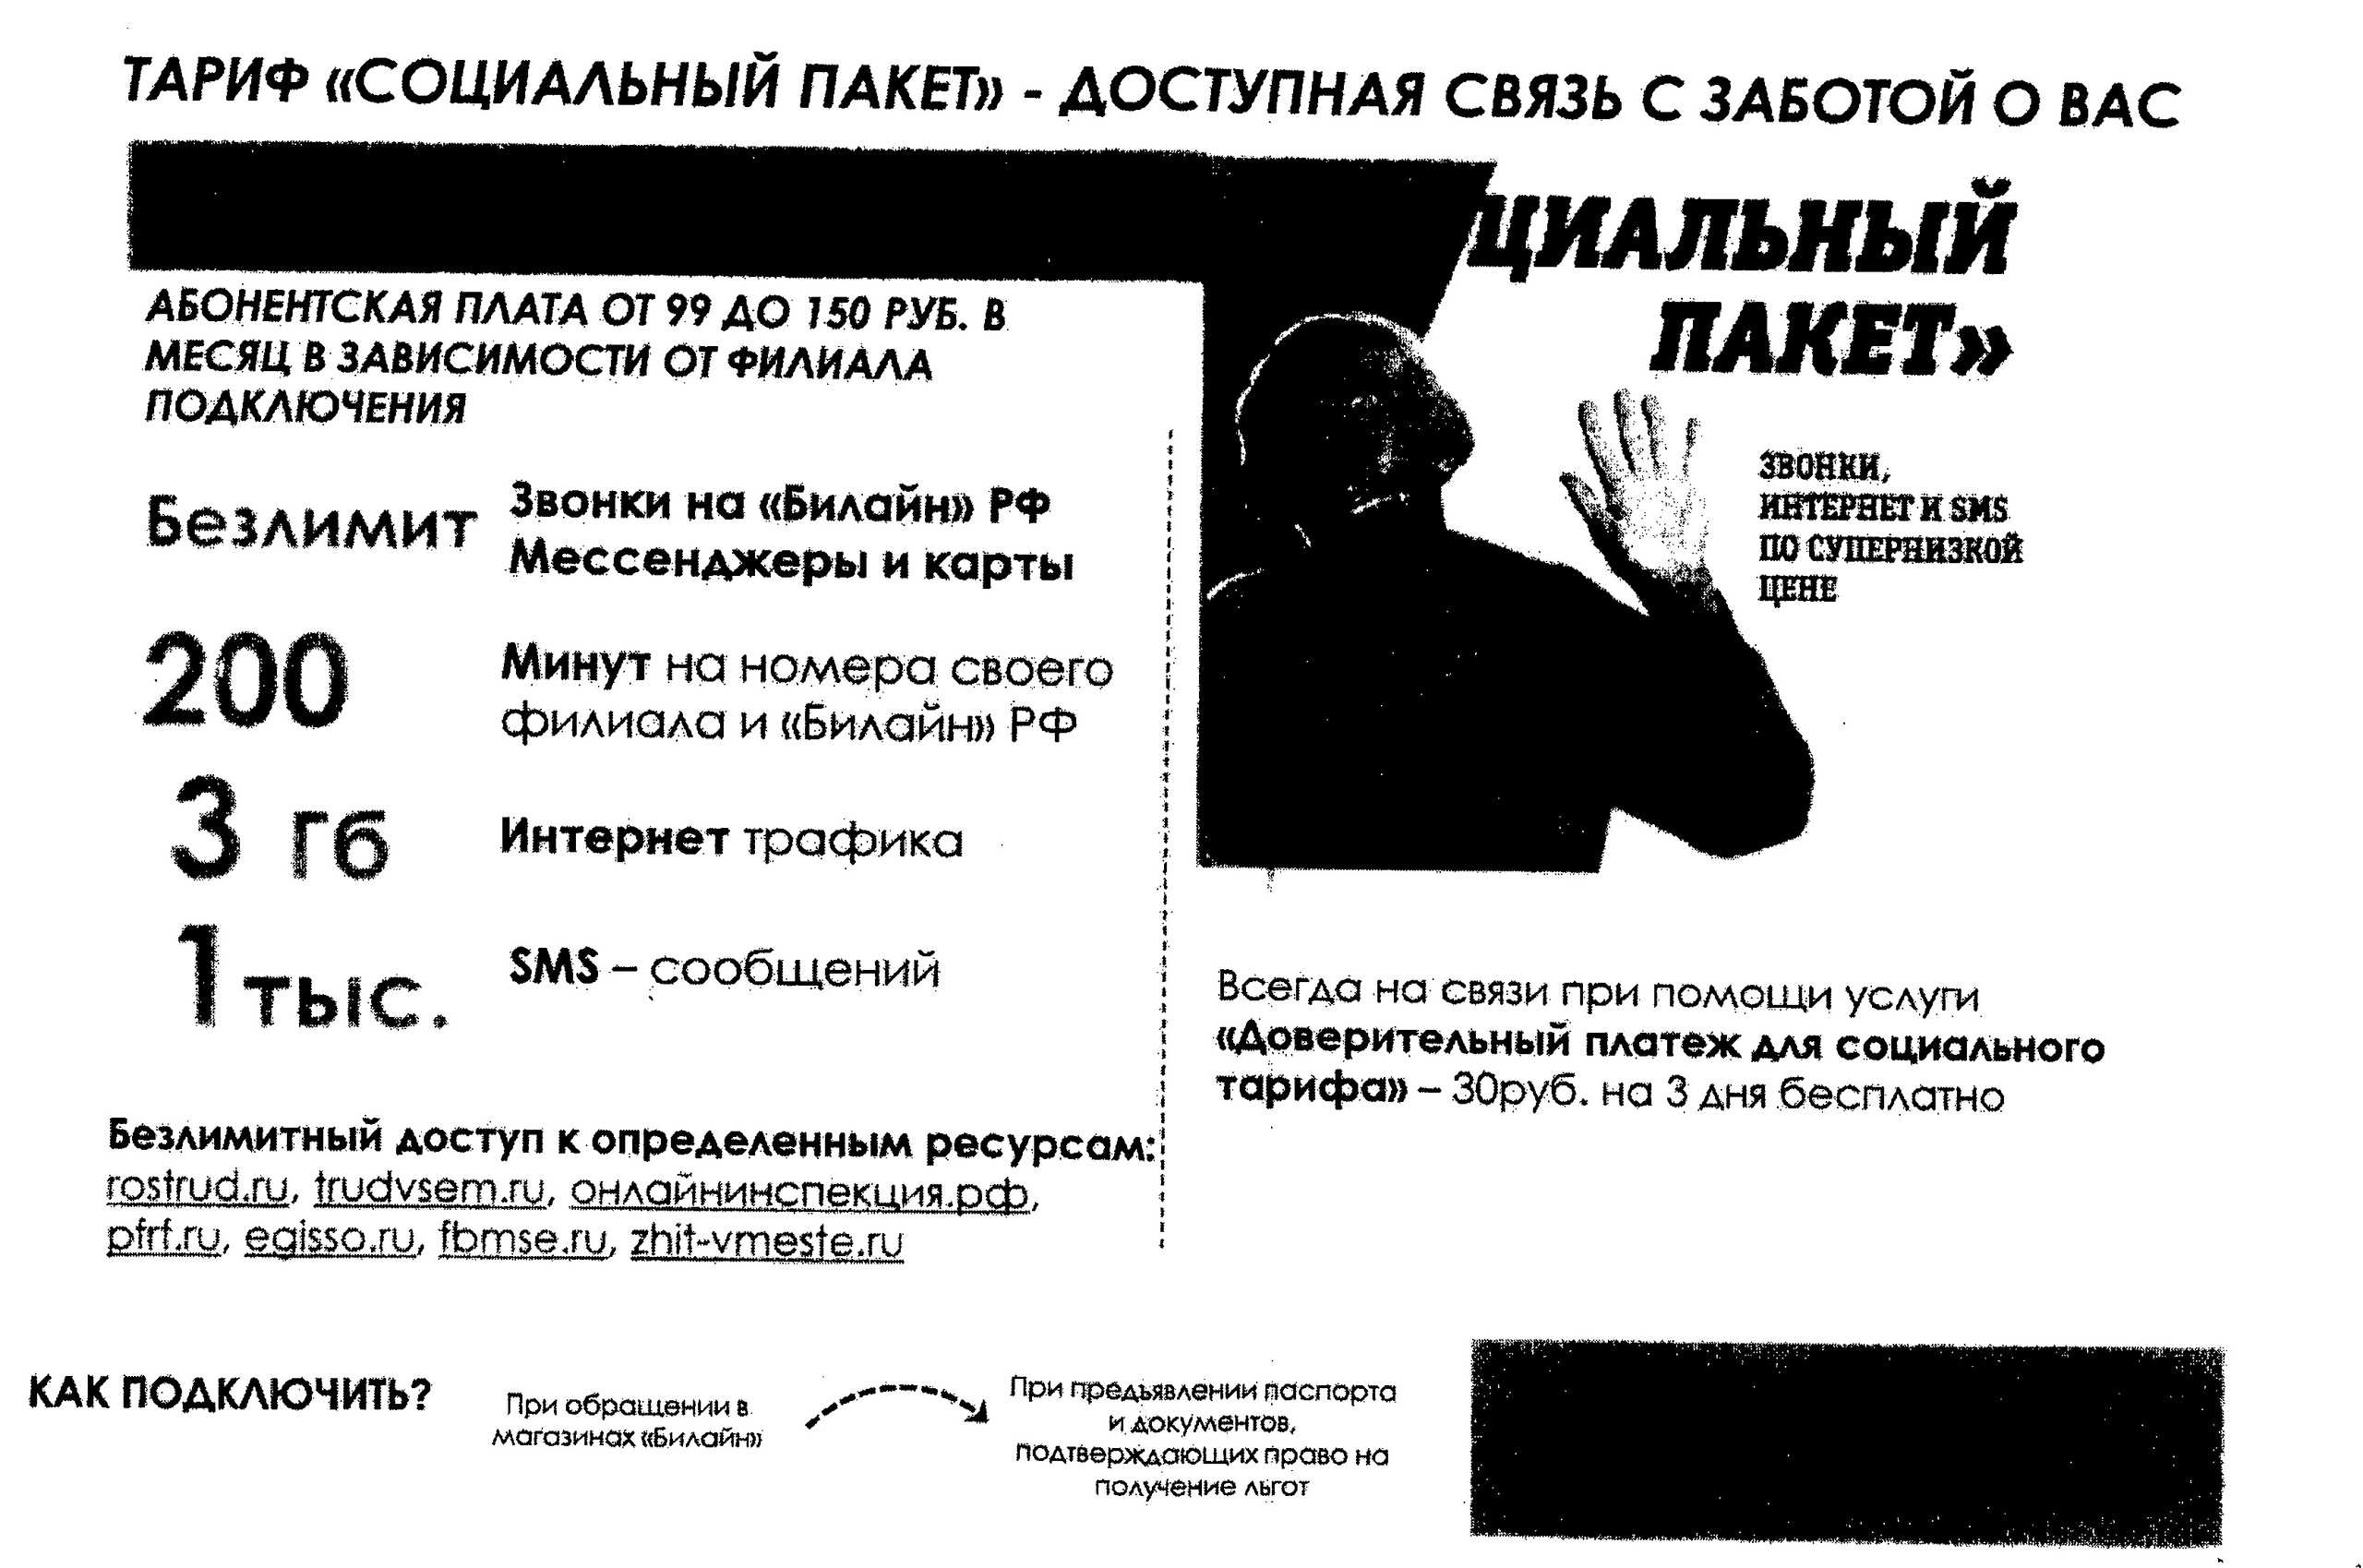 "социальный" тариф от теле2: описание, как подключиться тарифкин.ру
"социальный" тариф от теле2: описание, как подключиться